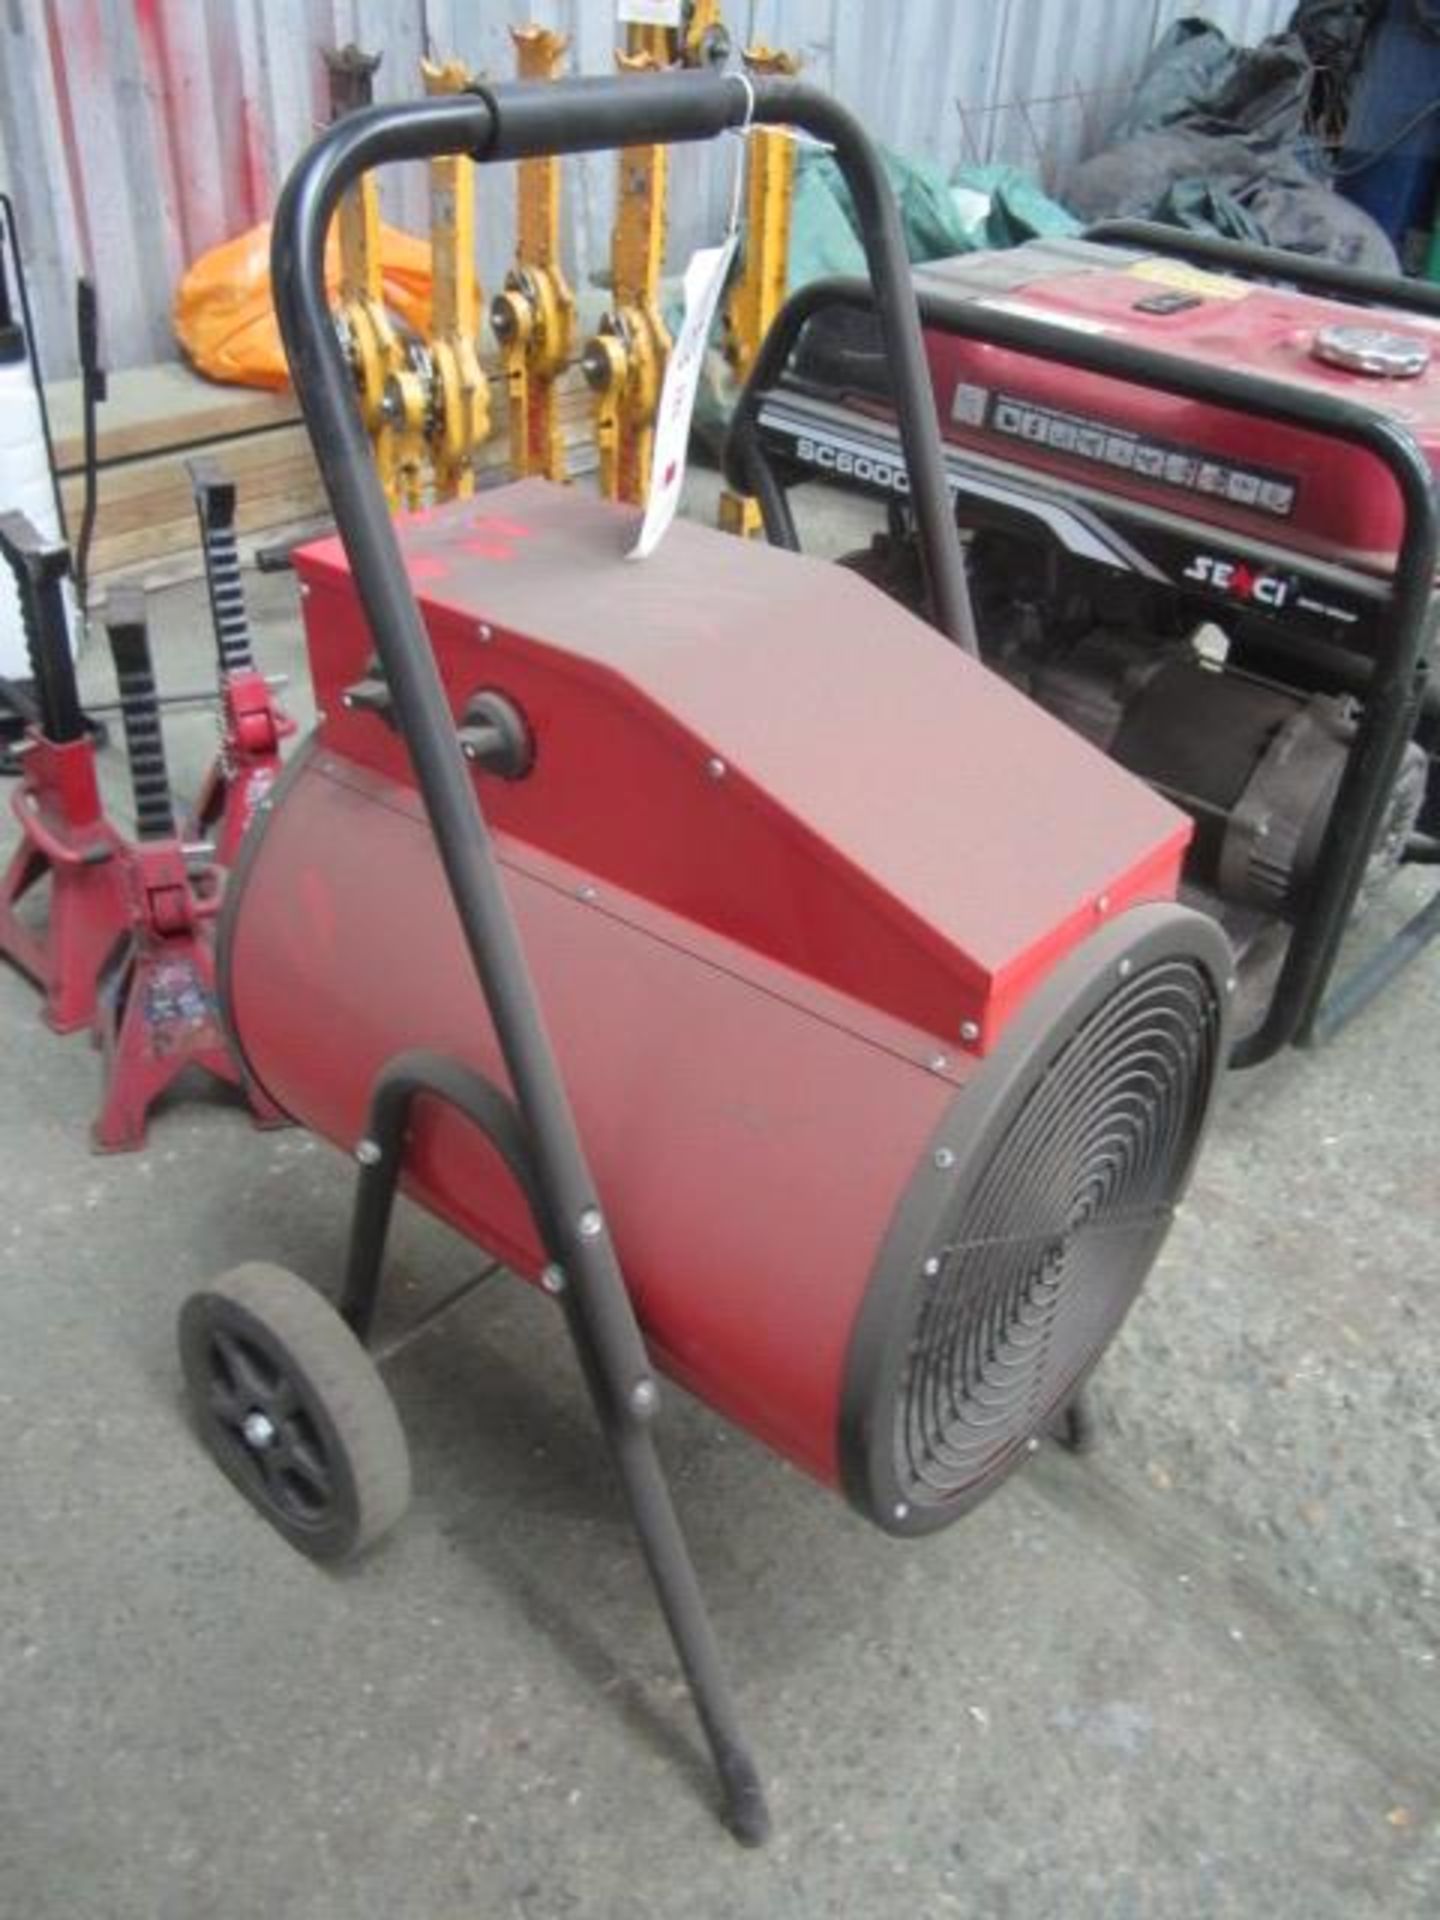 Sealey 15kw industrial fan heater - Image 2 of 4